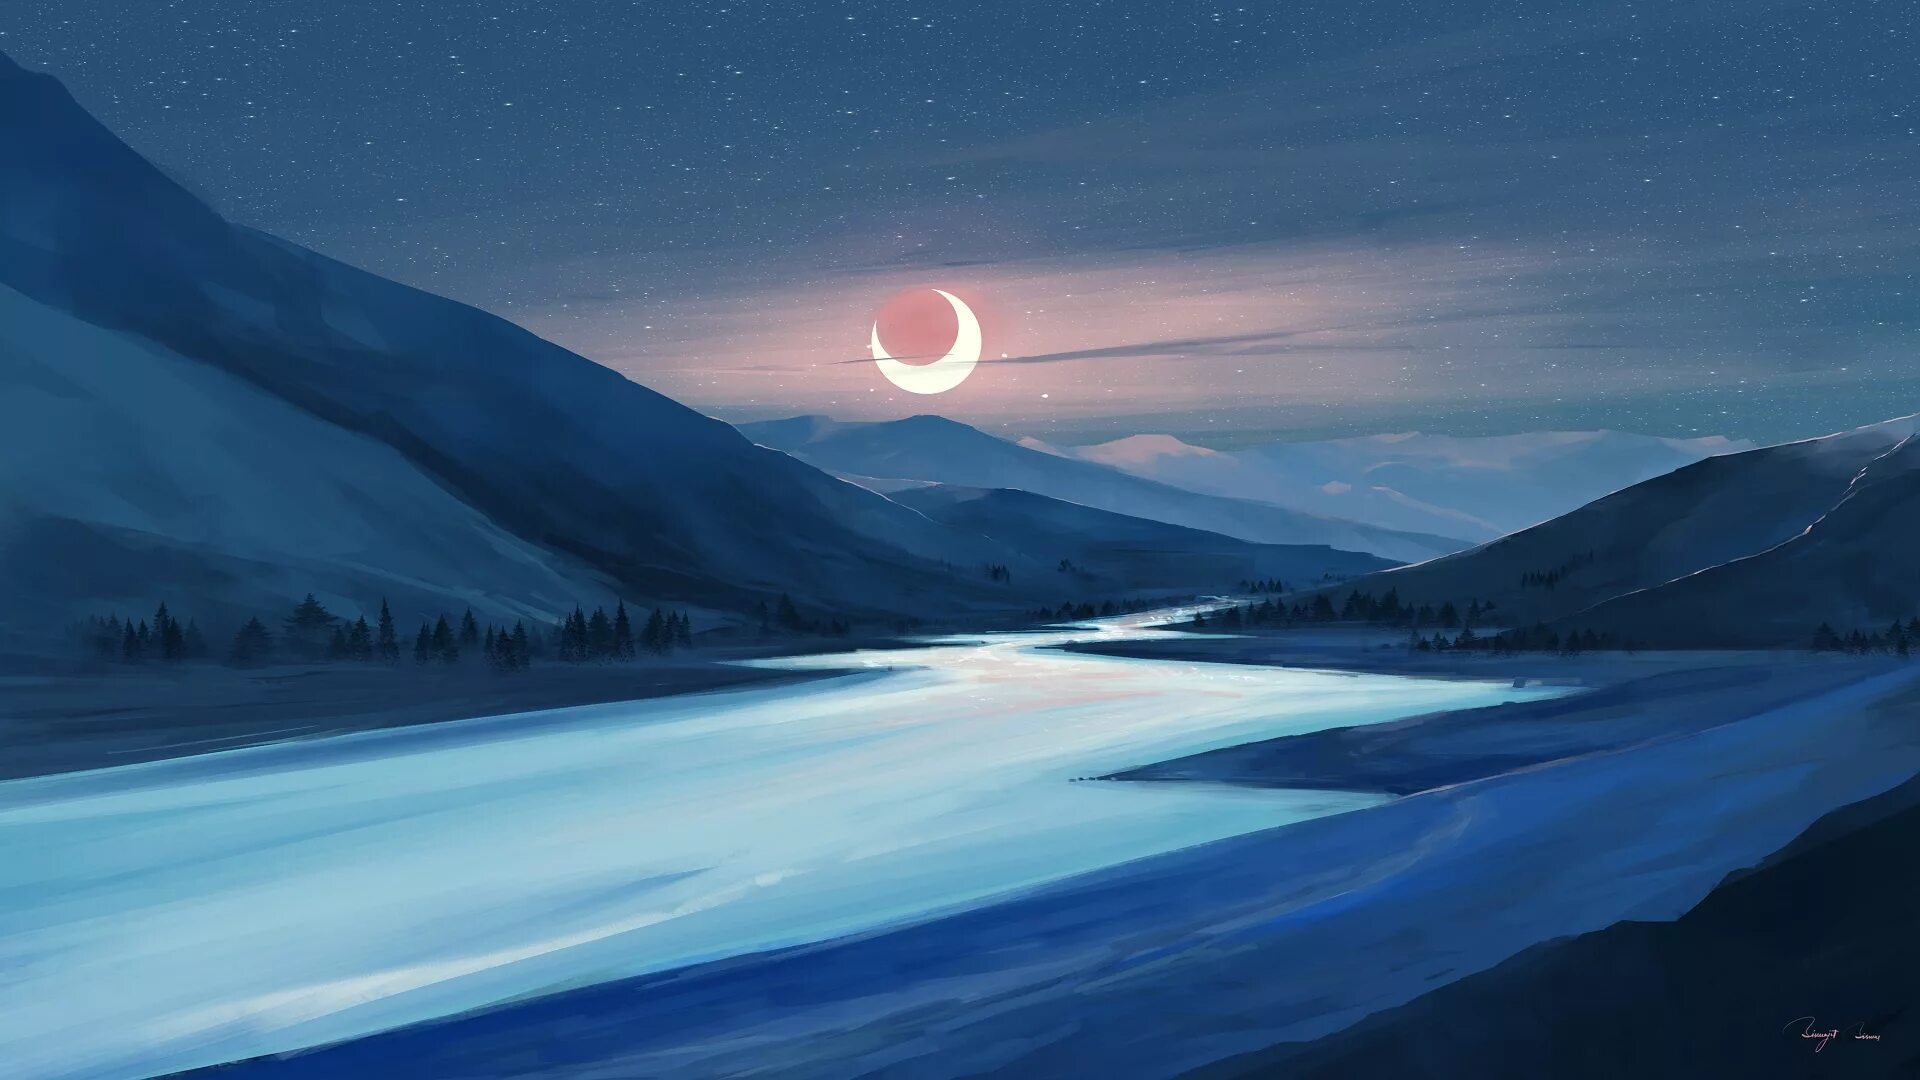 Чудесны лунные мартовские ночи впр 5. Лунный пейзаж. Горы ночью. Пейзаж с луной. Зимние горы ночью.